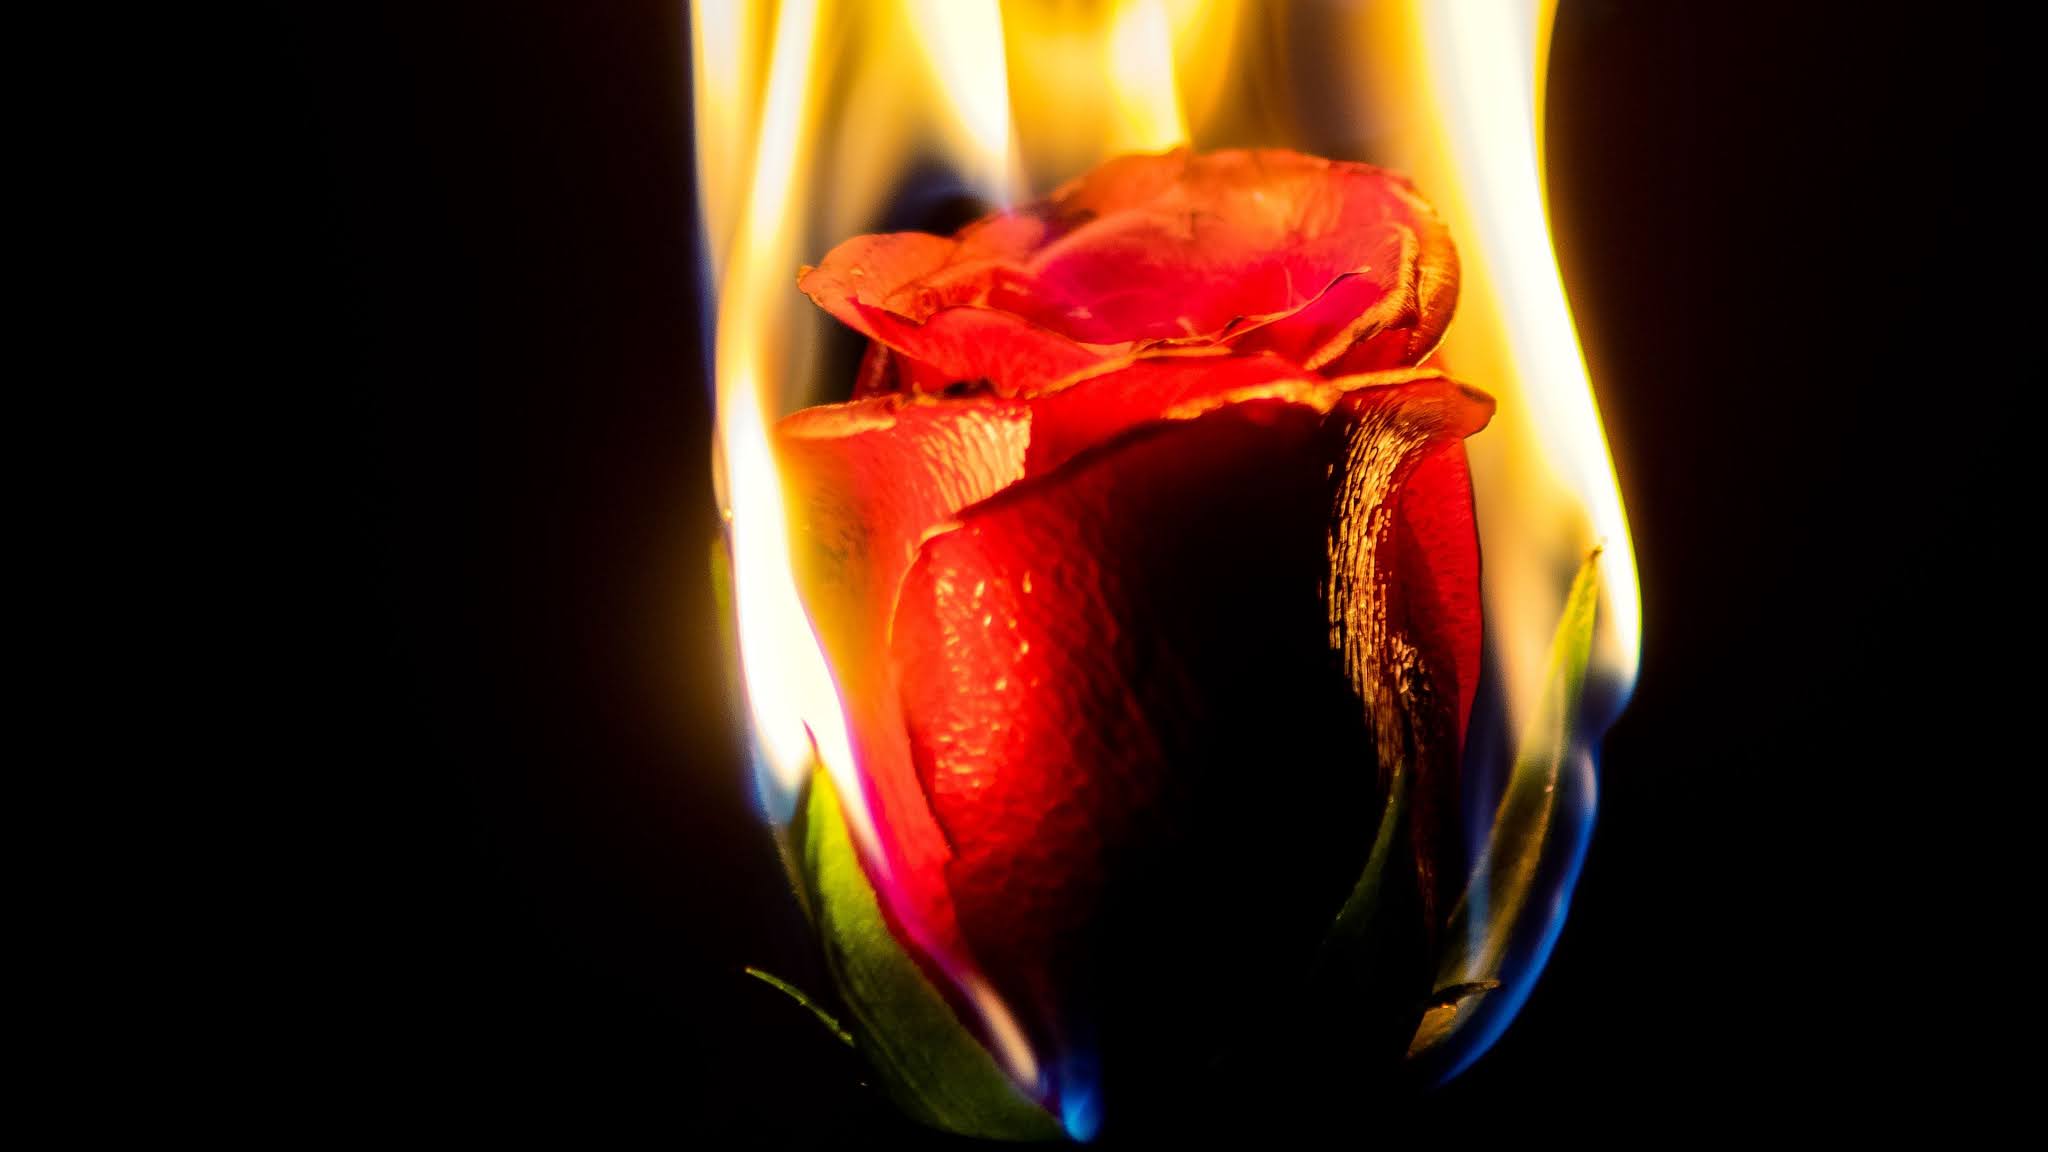 Burning Red Rose Flower 4k Wallpaper